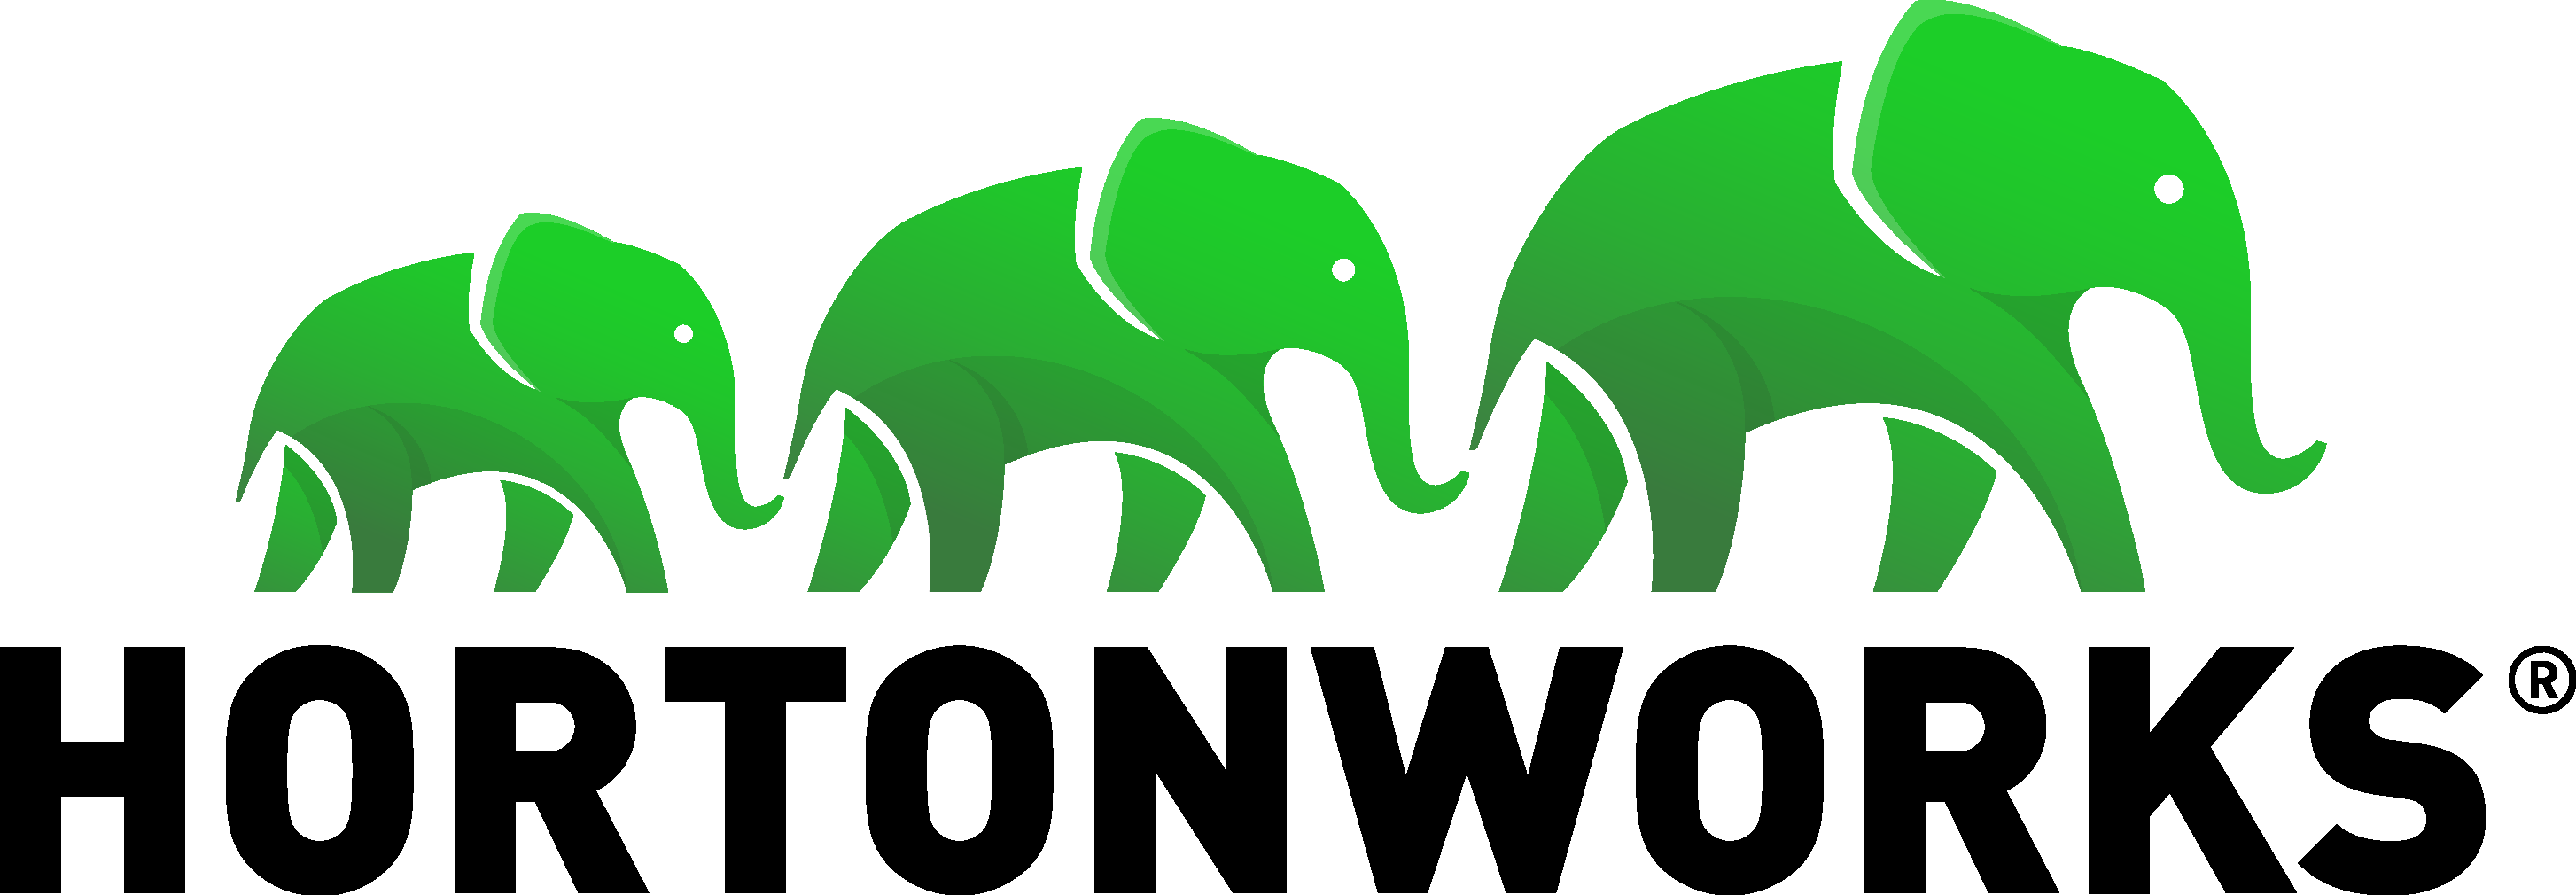 Hortonworks Logo png